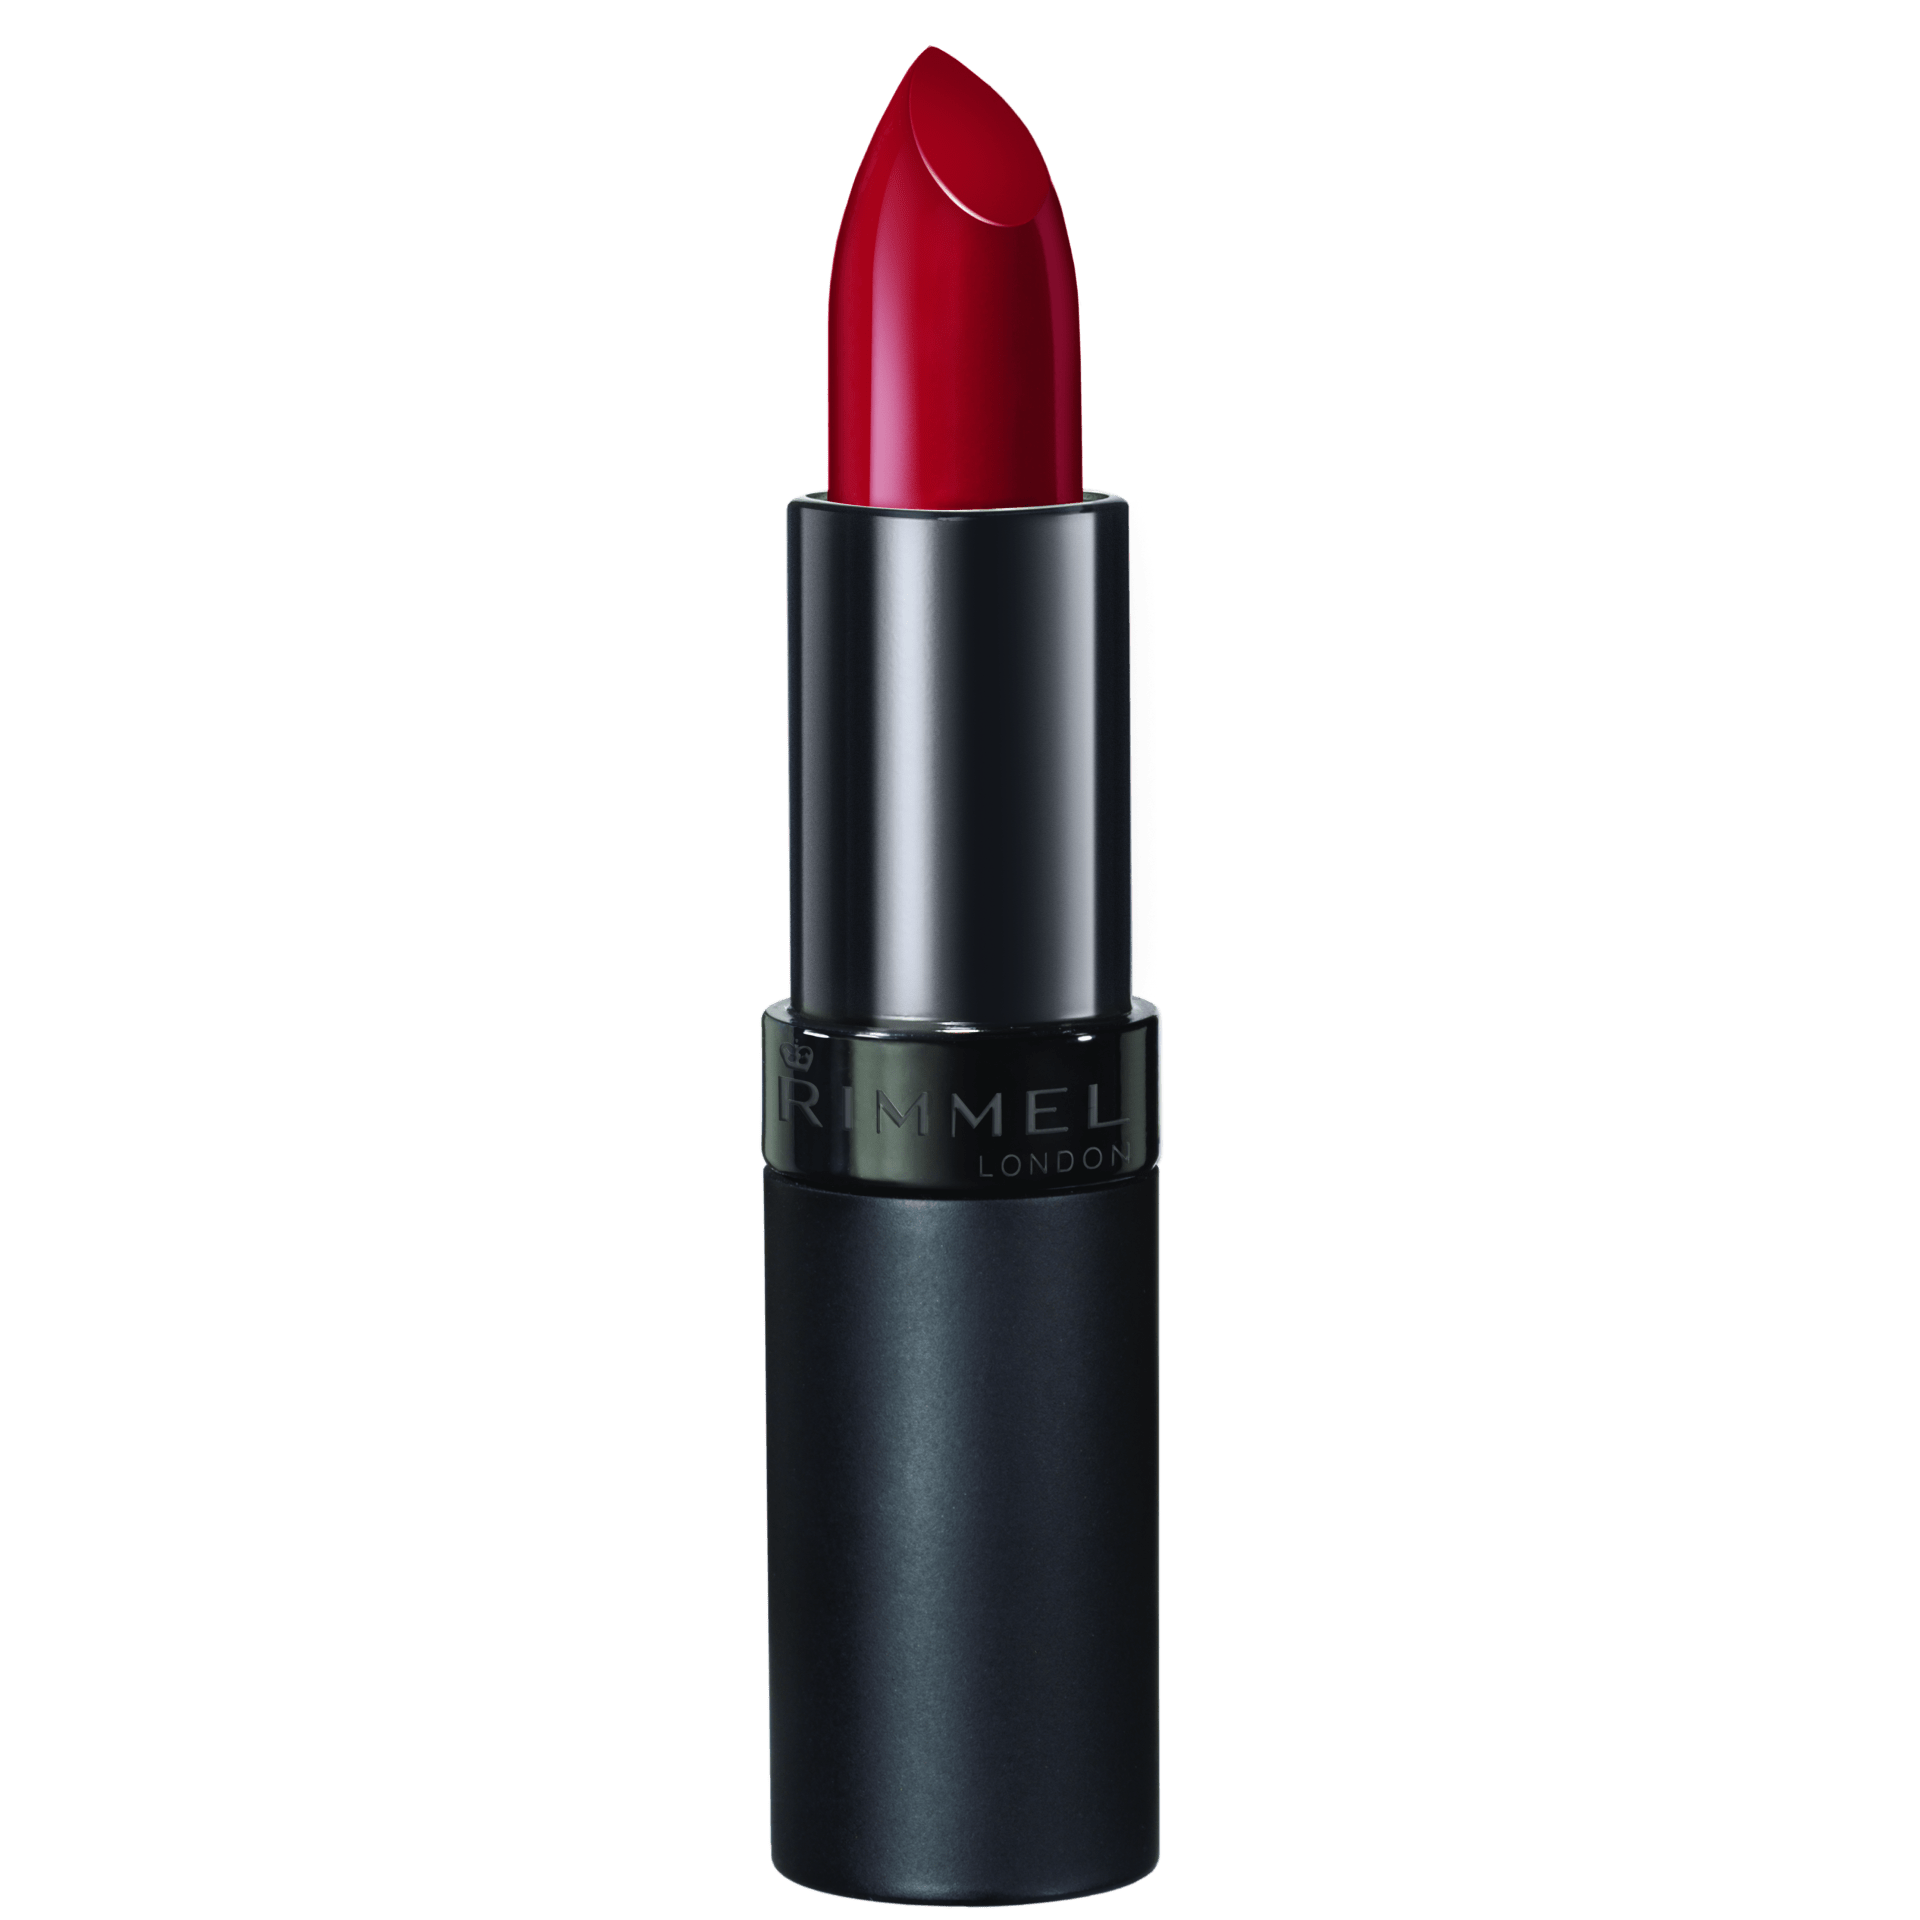 Lasting Finish Lipstick